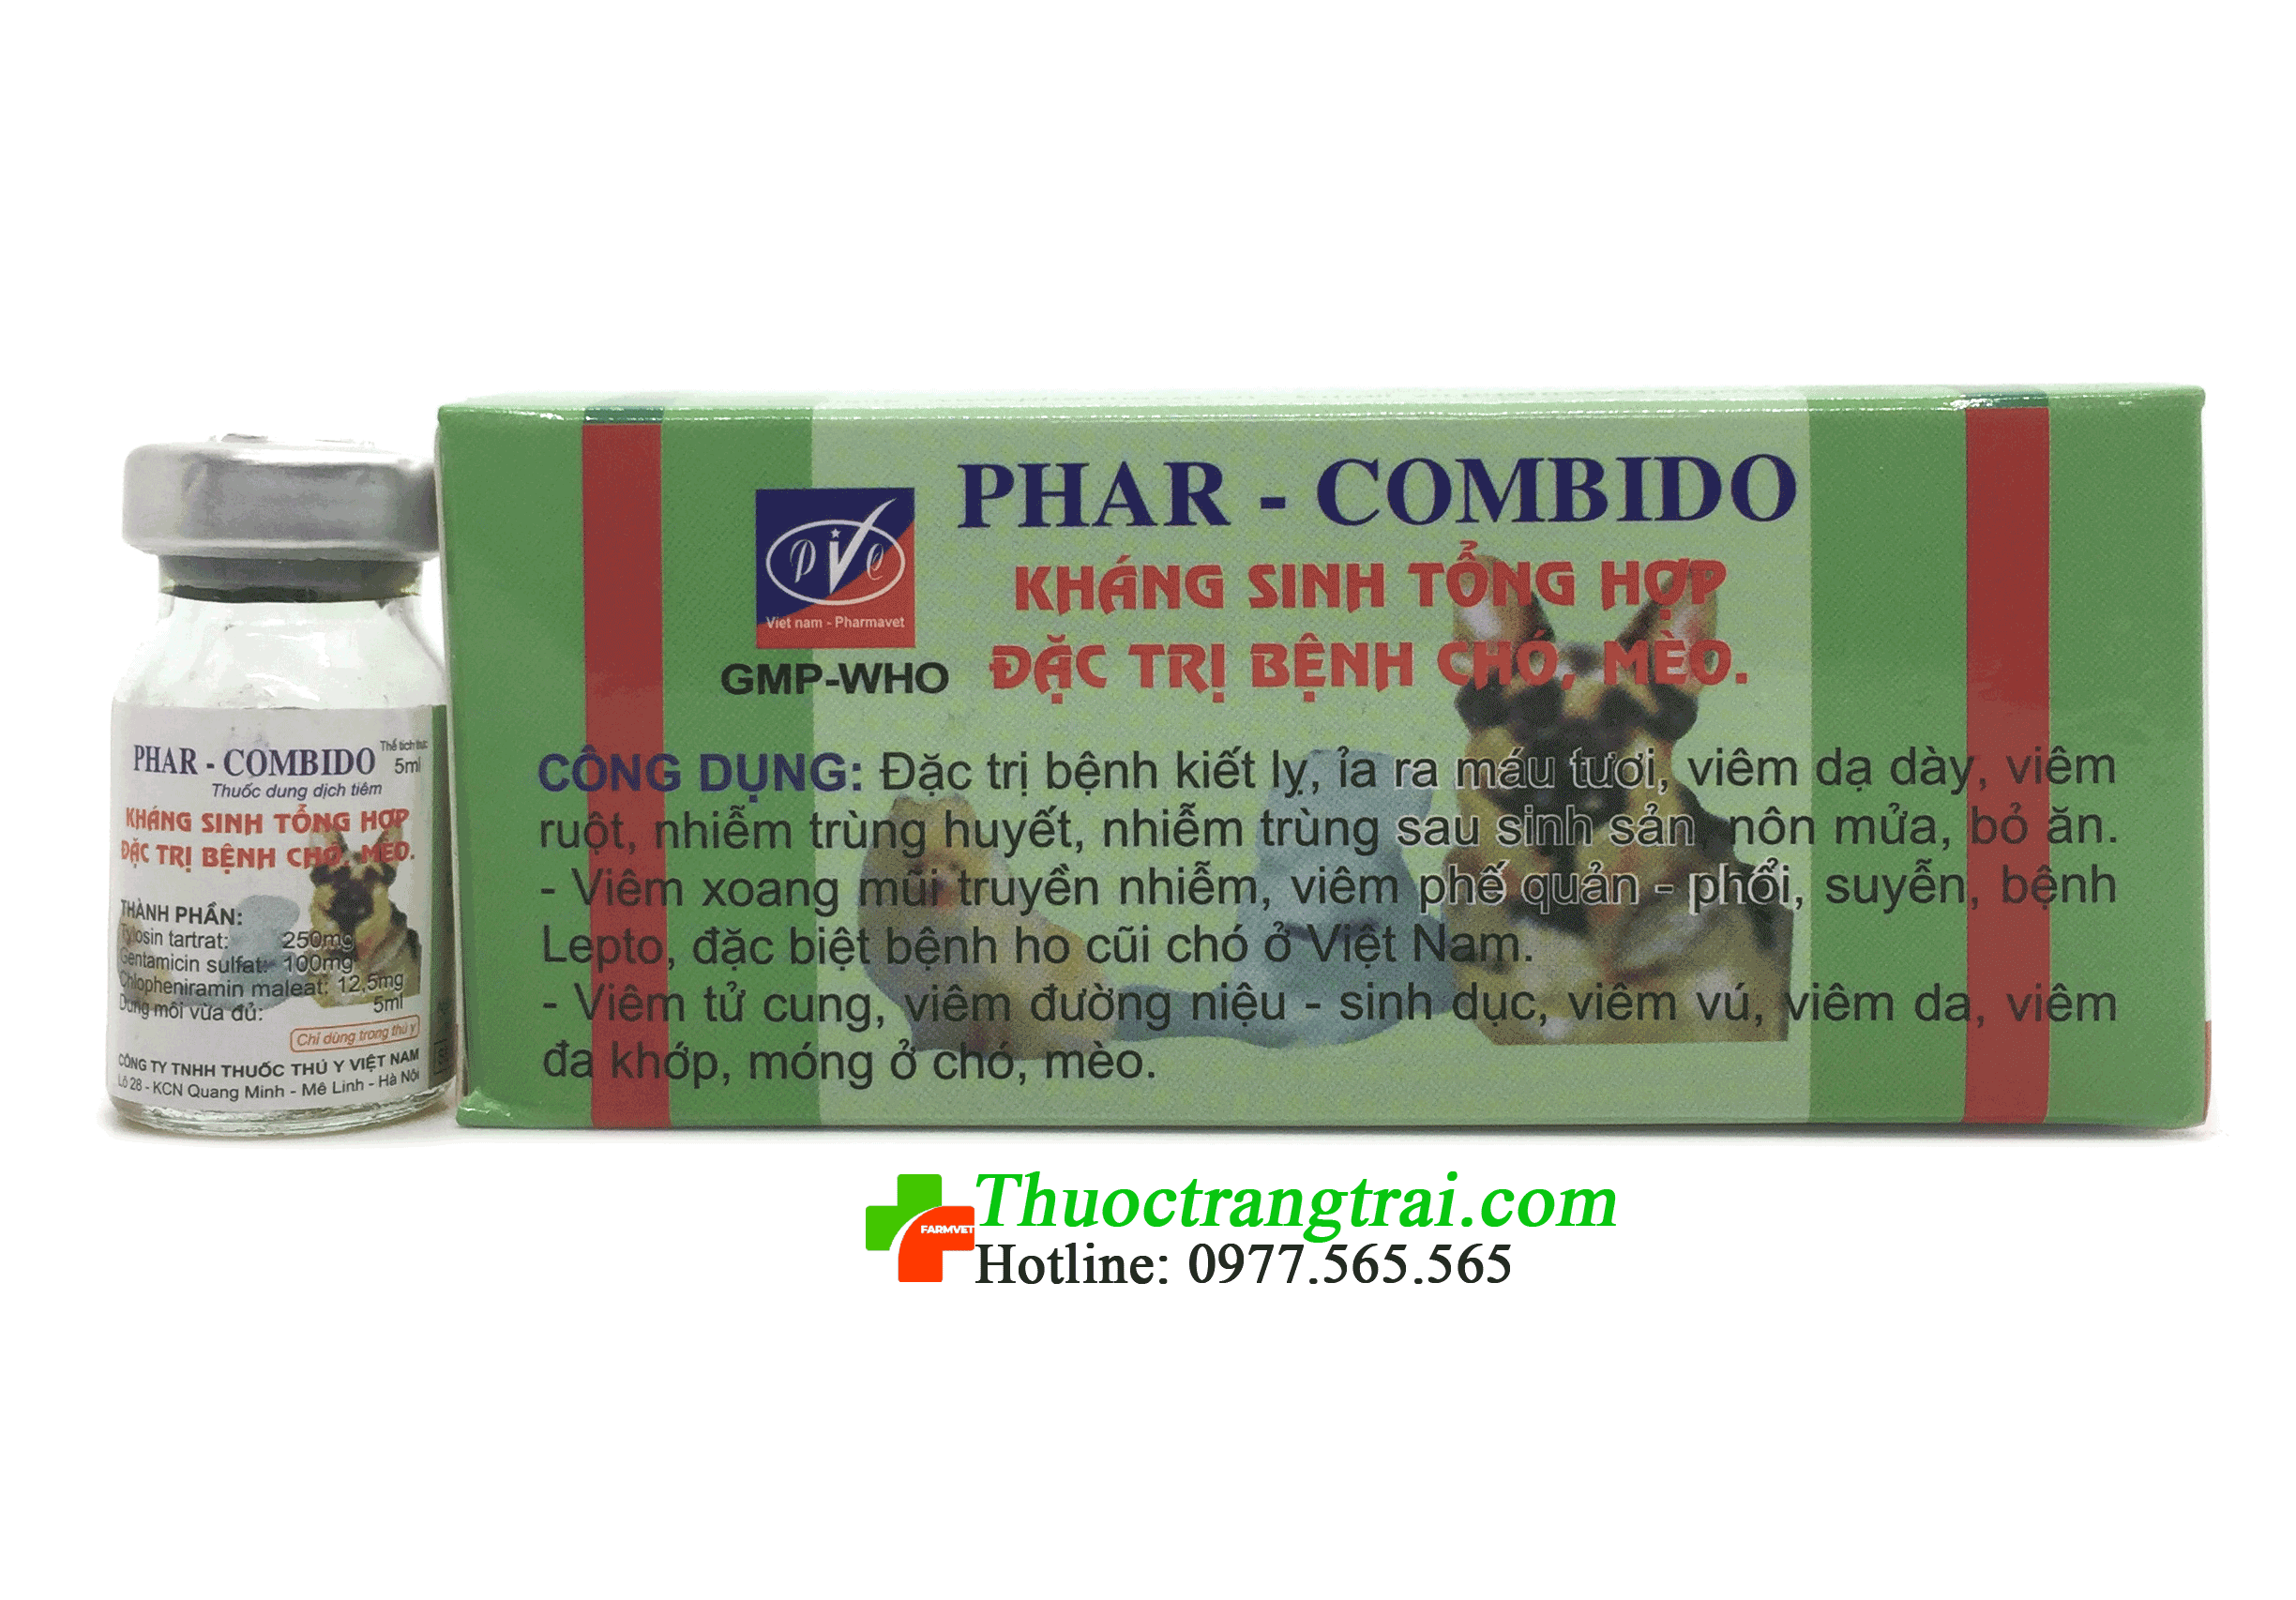 Thuốc kháng sinh tổng hợp Phar- Combido được bác sĩ thú y khuyên dùng